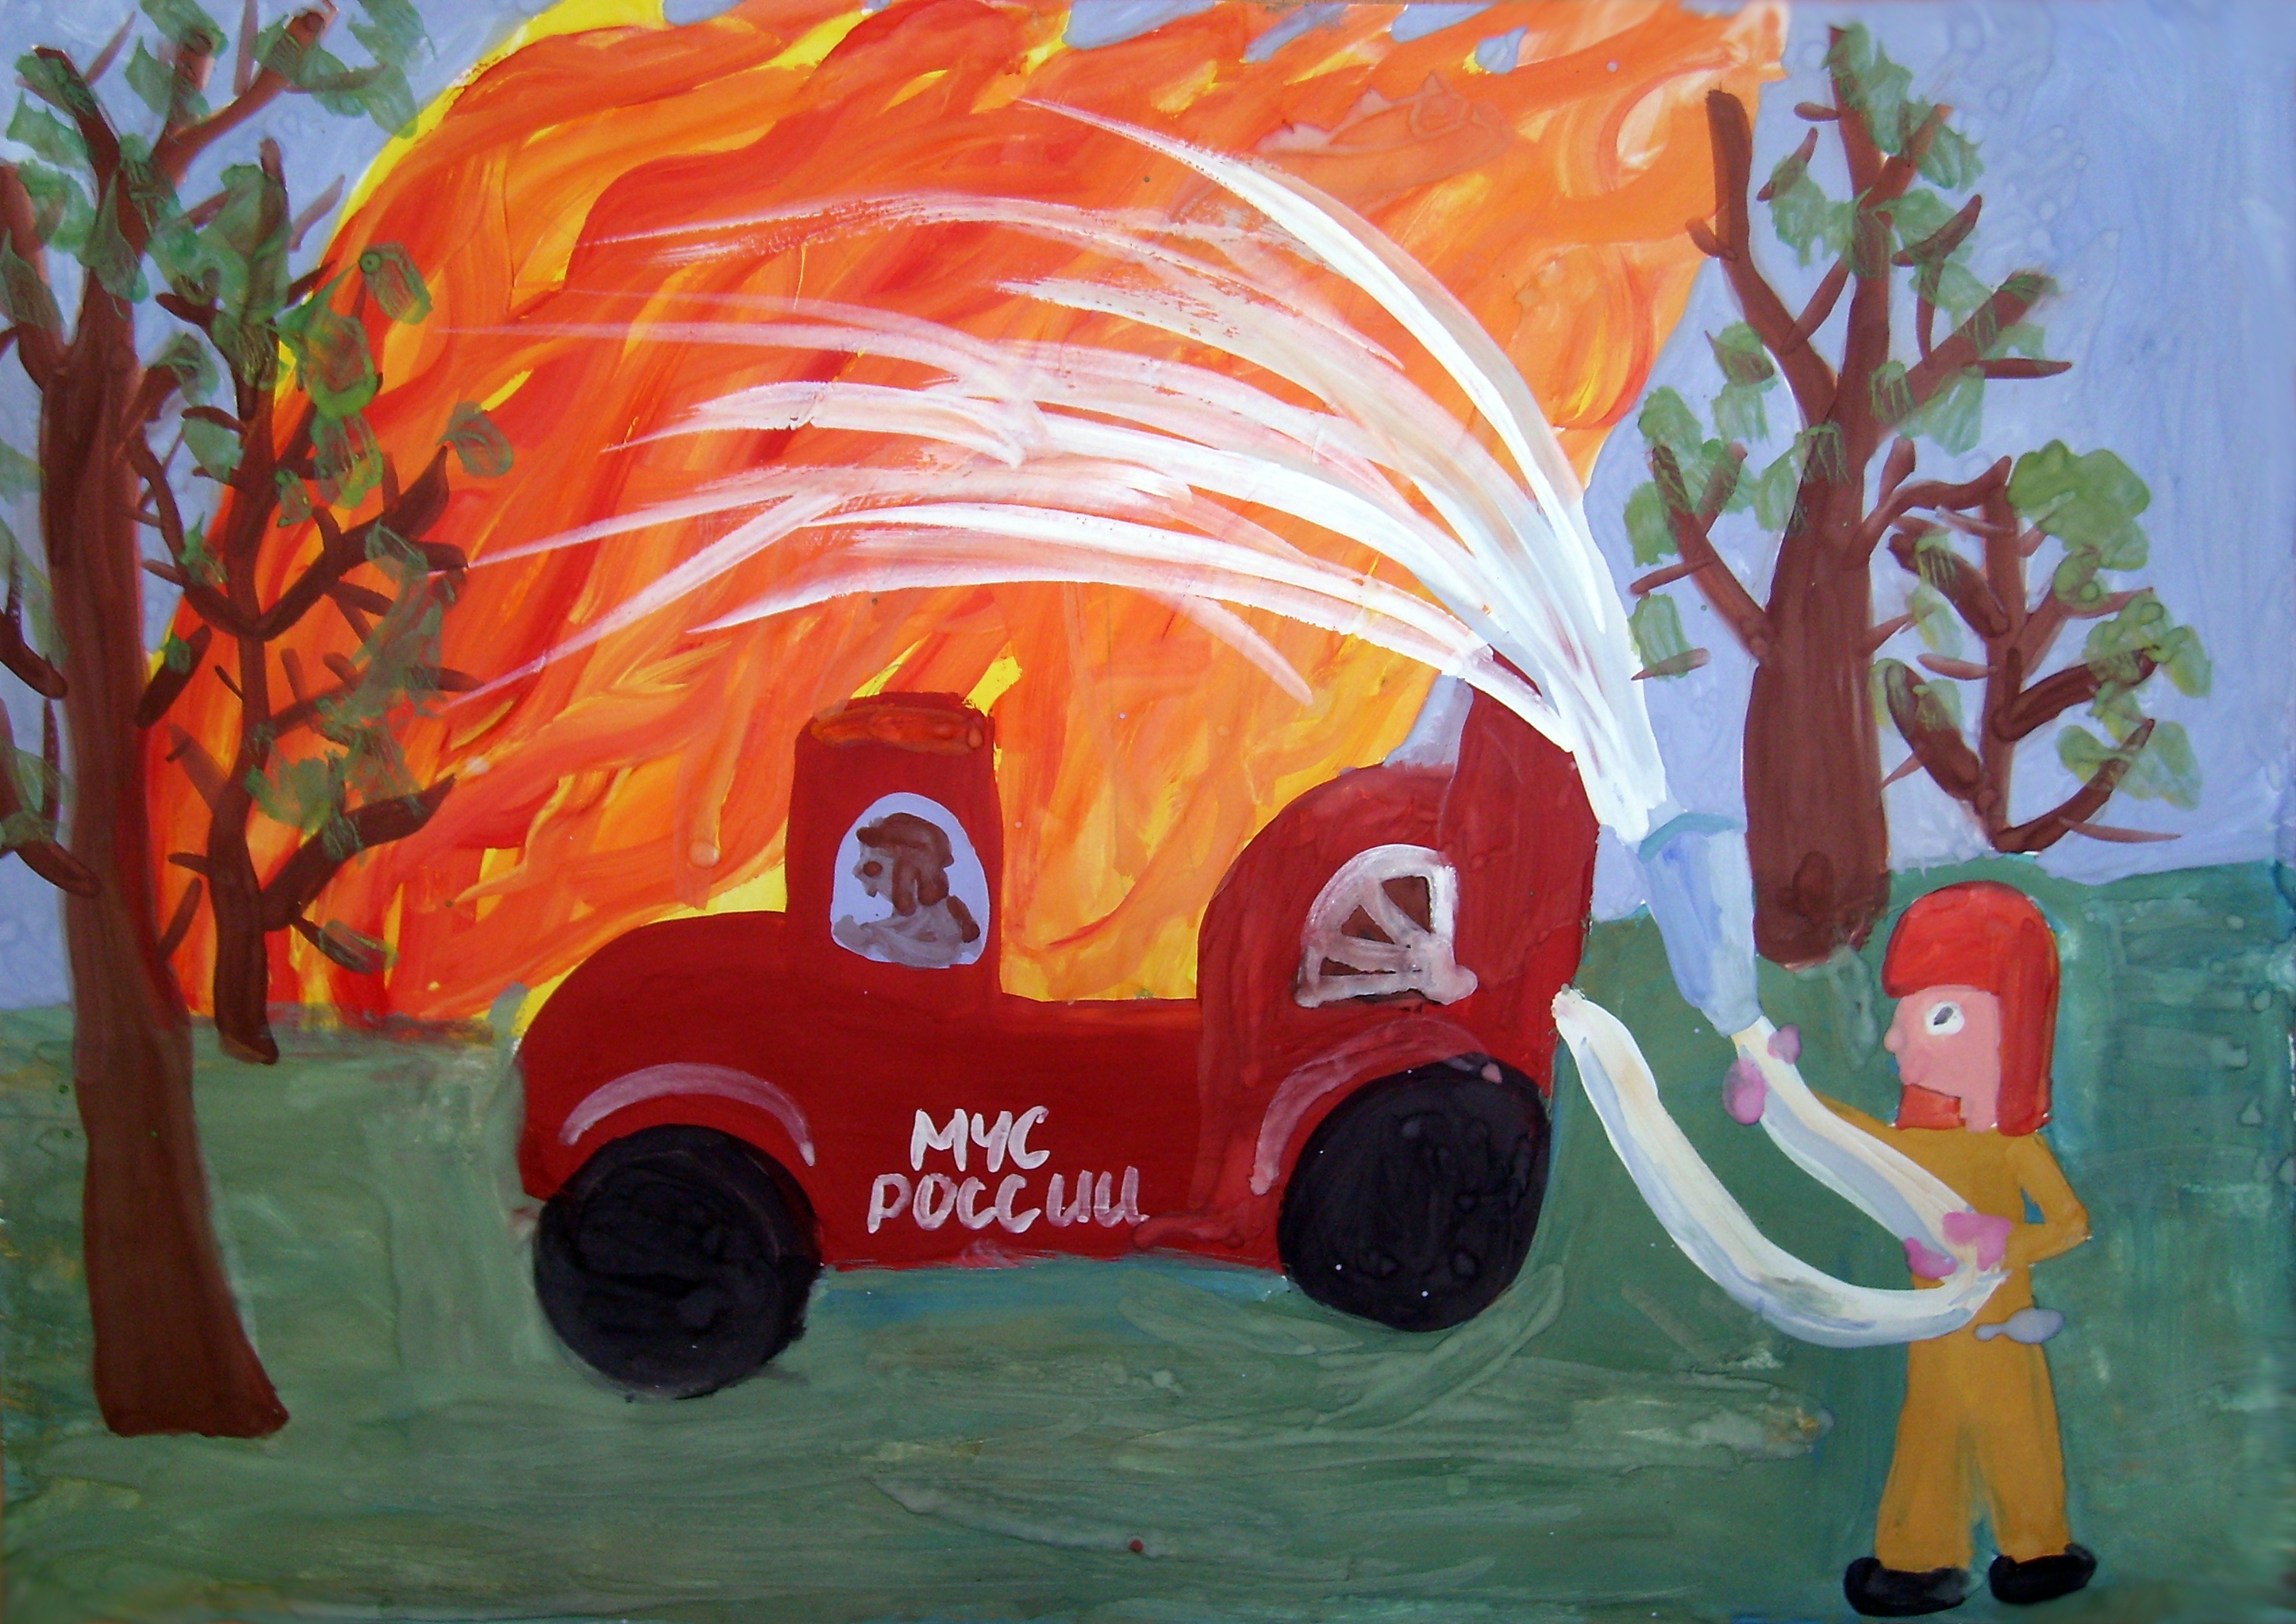 Детский Рисунок Про Пожарную Безопасность